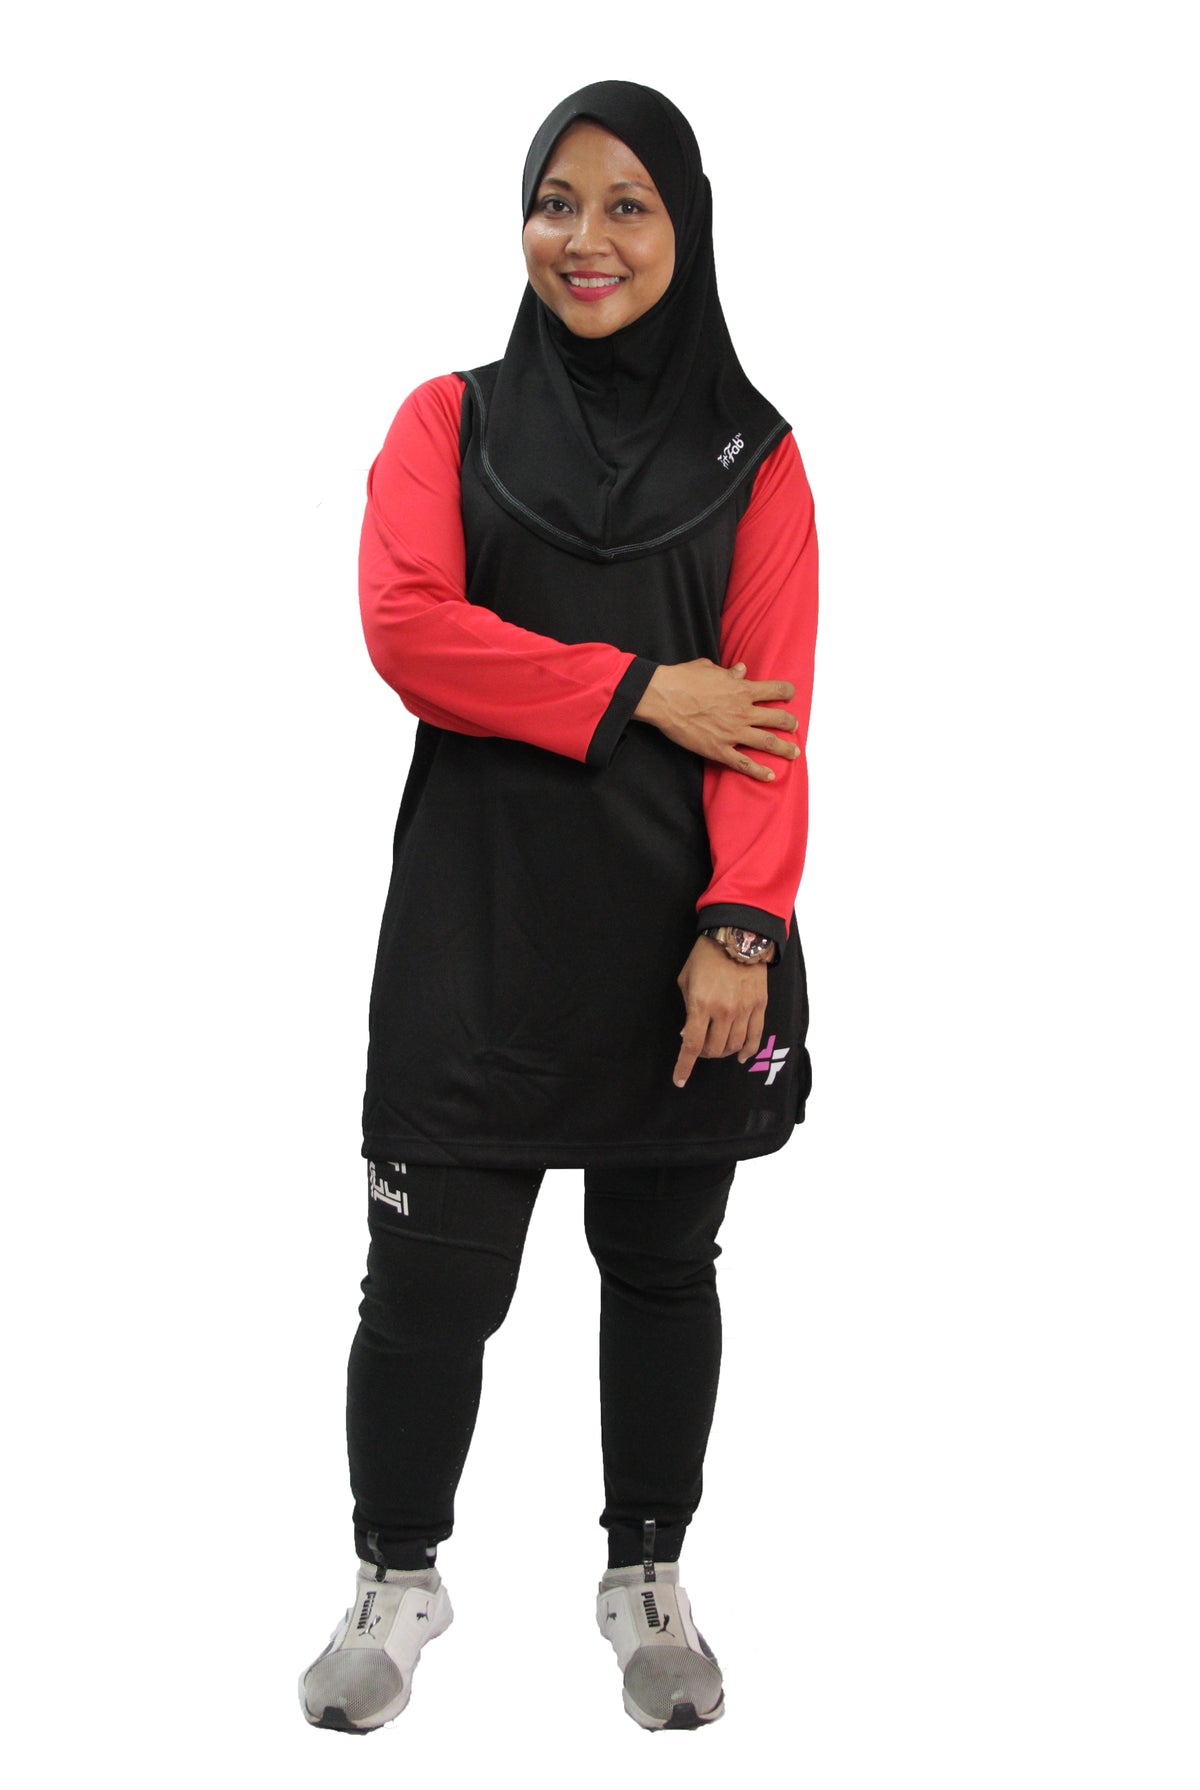 ACTIVEwear Muslimah Black-Red